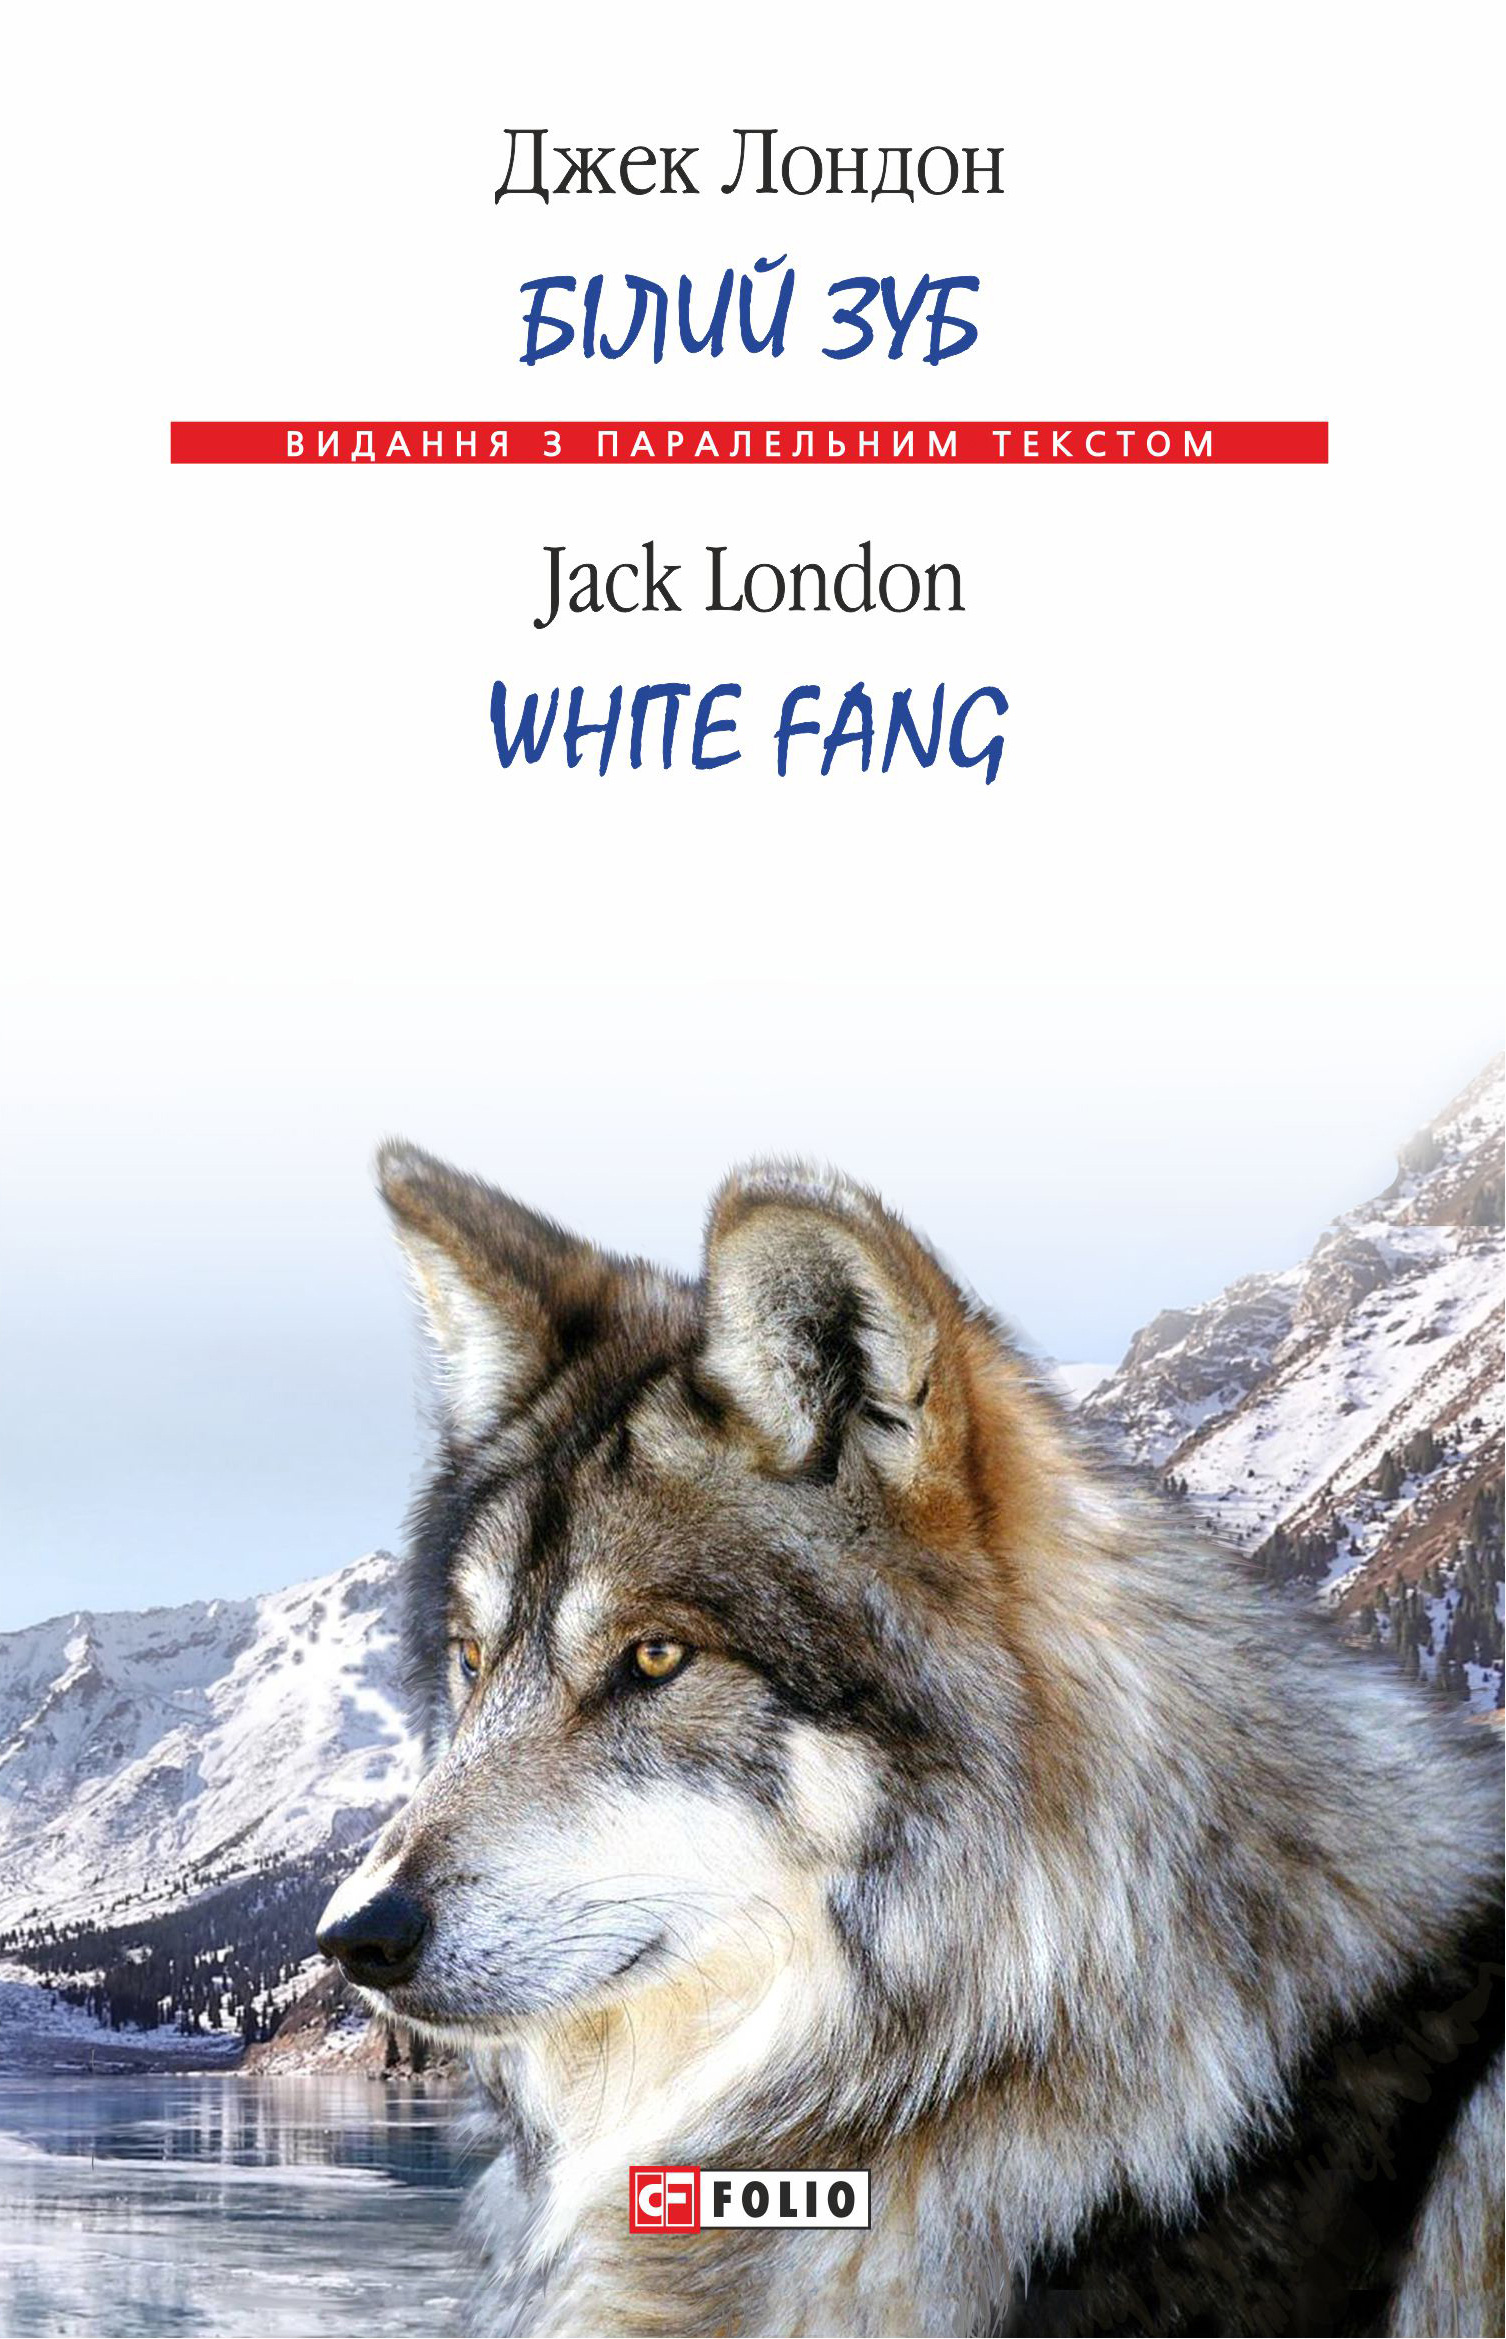 Книга Білий Зуб = White Fang из серии , созданная Джек Лондон, может относится к жанру Литература 20 века, Зарубежная классика. Стоимость электронной книги Білий Зуб = White Fang с идентификатором 36621550 составляет 114.00 руб.